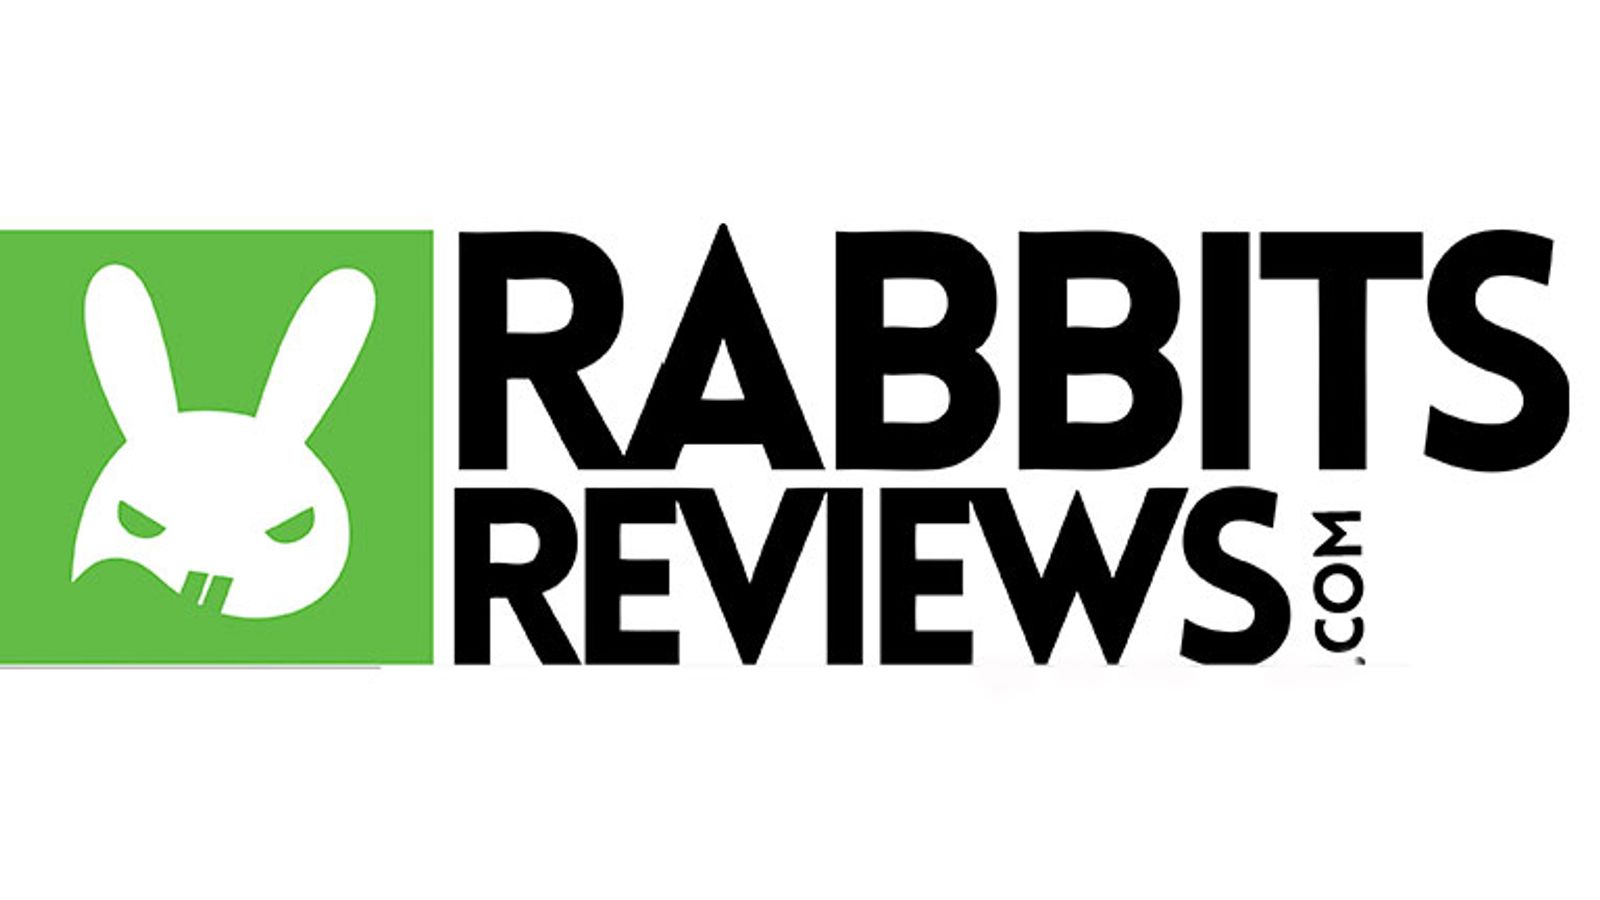 Rabbits Reviews Acquires TopCamSites.com & TopChats.com